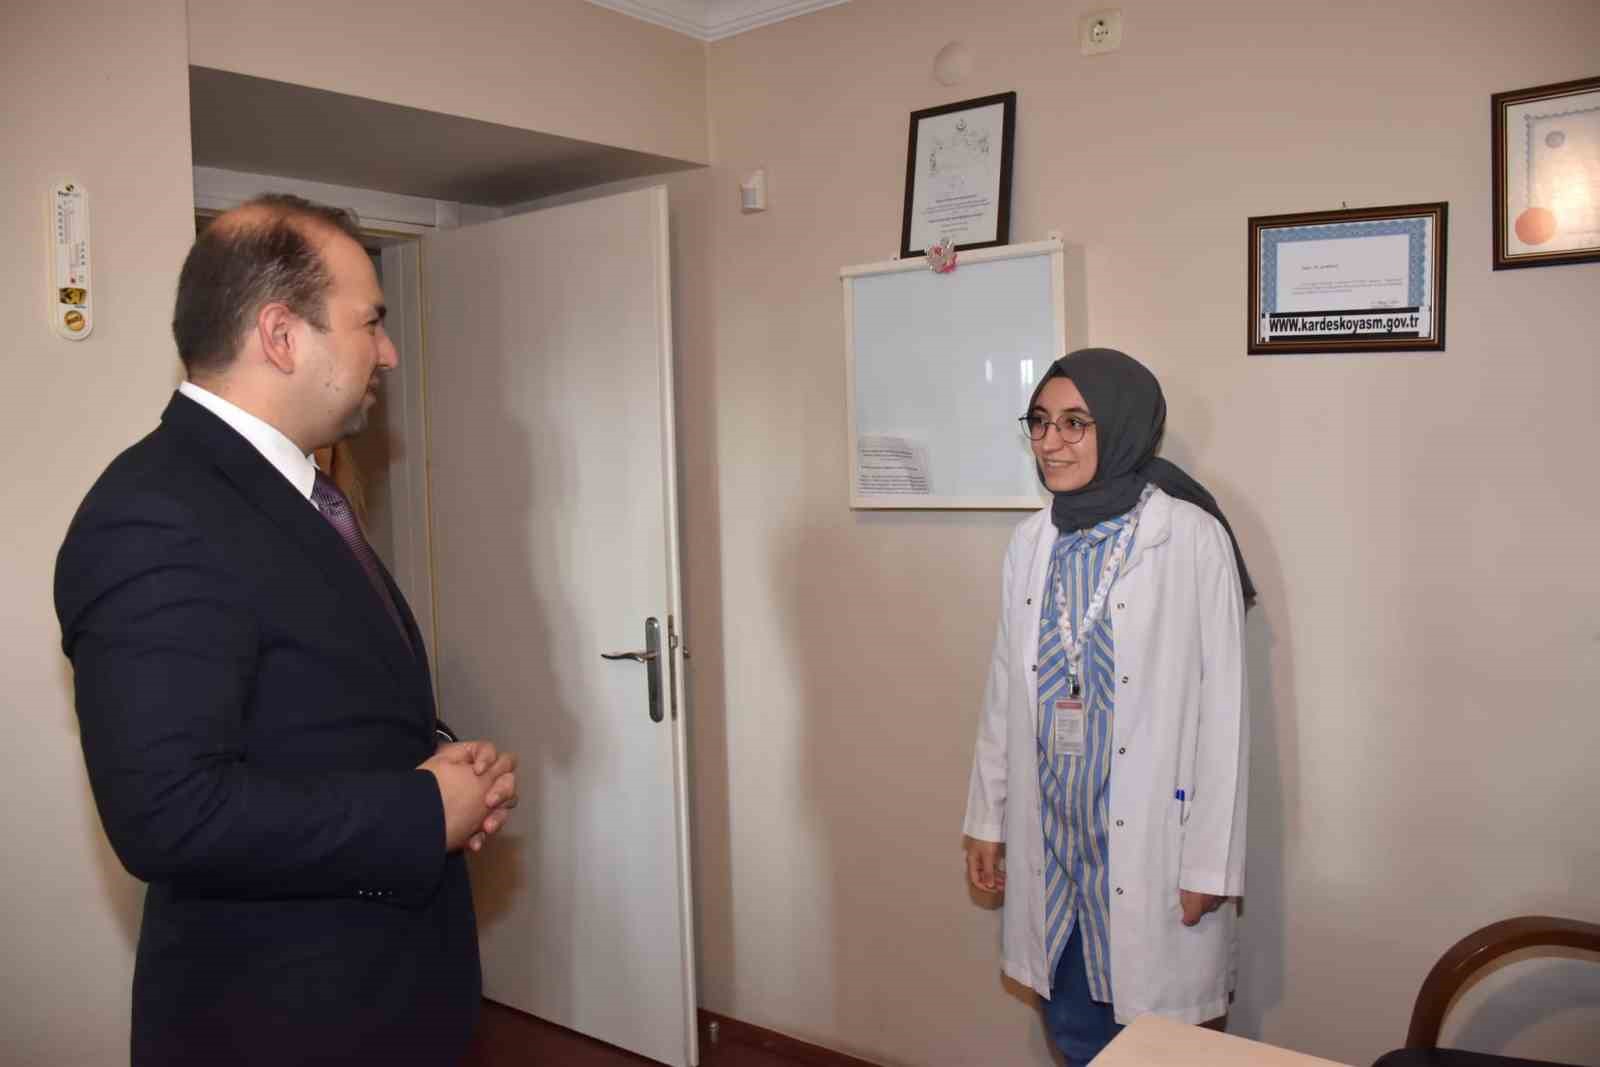 İl Sağlık Müdürü Şenkul Kardeşköy Aile Sağlığı Merkezi’nde çalışmaları yerinde inceledi